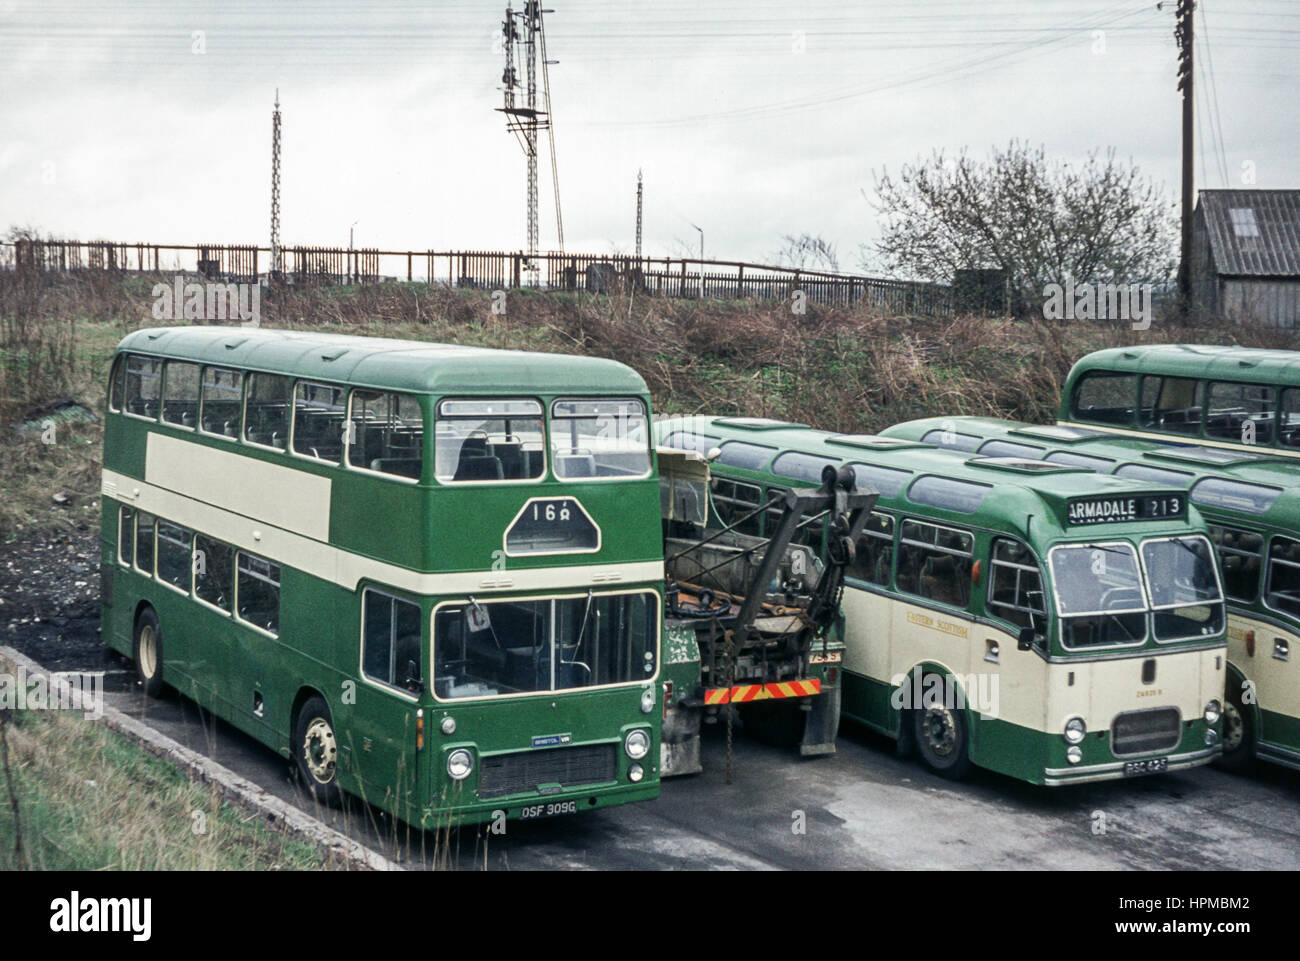 L'Écosse, Royaume-Uni - 1973 : image Vintage de bus Les bus de terrain. Avec les bus de la flotte écossaise orientale y compris double decker VRT/SL6G/ECW AA309 (numéro d'enregistrement OSF 309G) et l'entraîneur MW6G/ECW A625 (numéro d'enregistrement 625 RSC). Banque D'Images